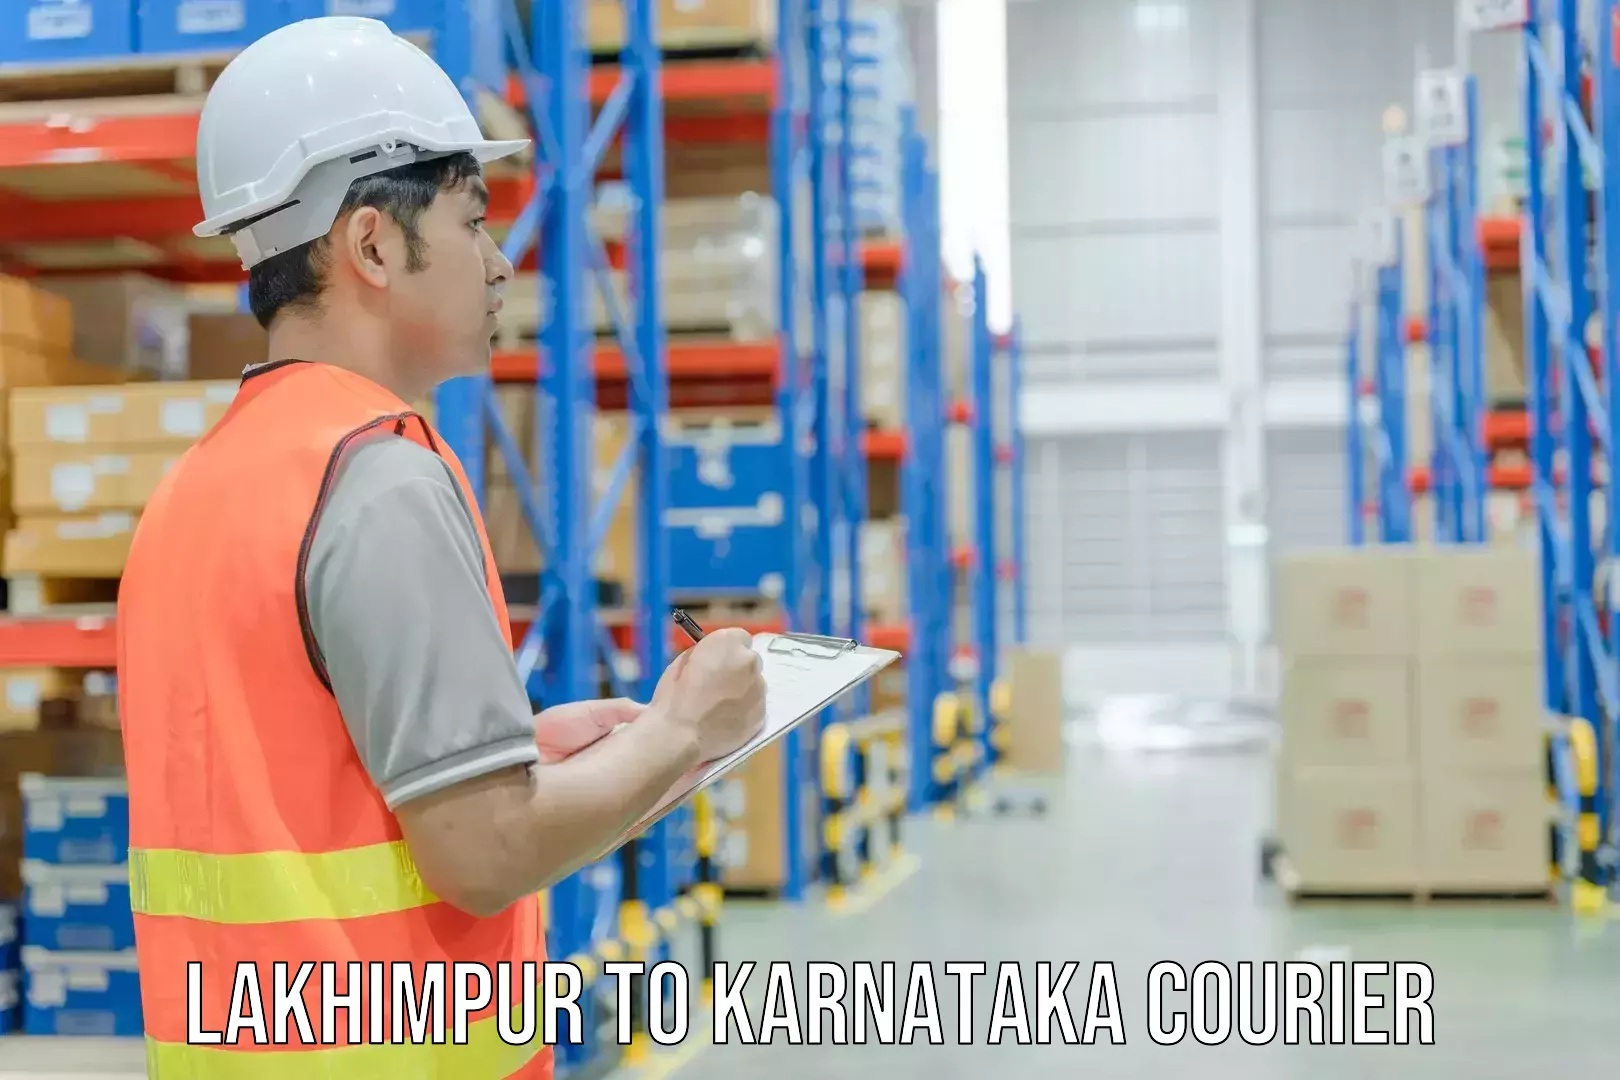 Customer-centric shipping Lakhimpur to Panja Dakshin Kannad